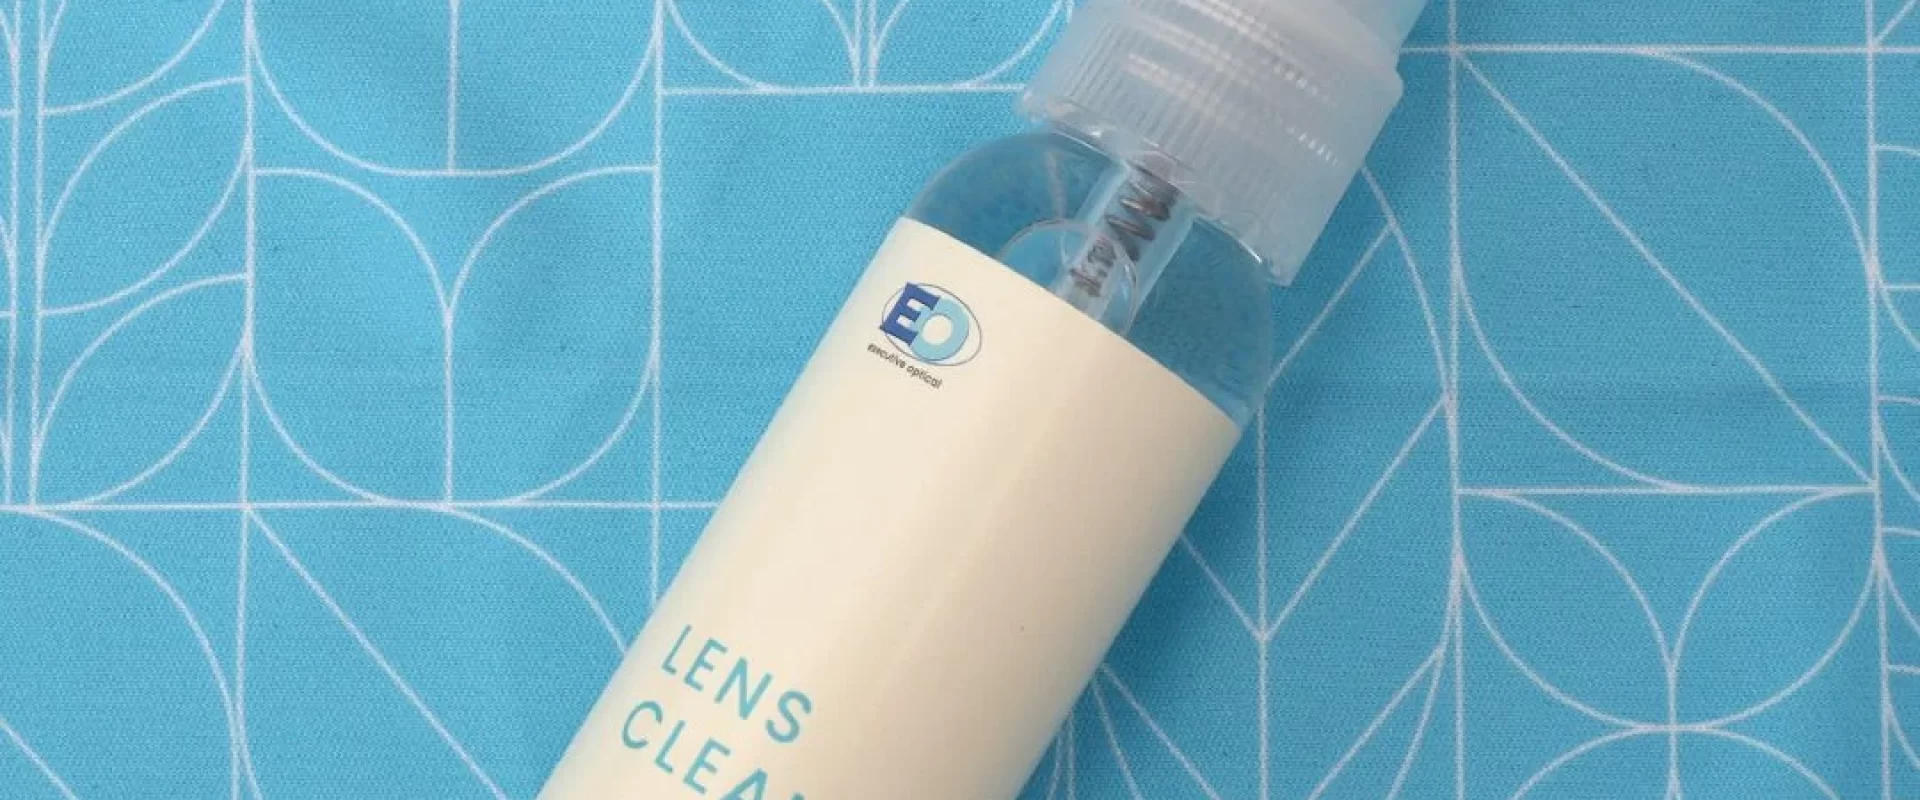 EO eyeglass anti-fog lens cleaner